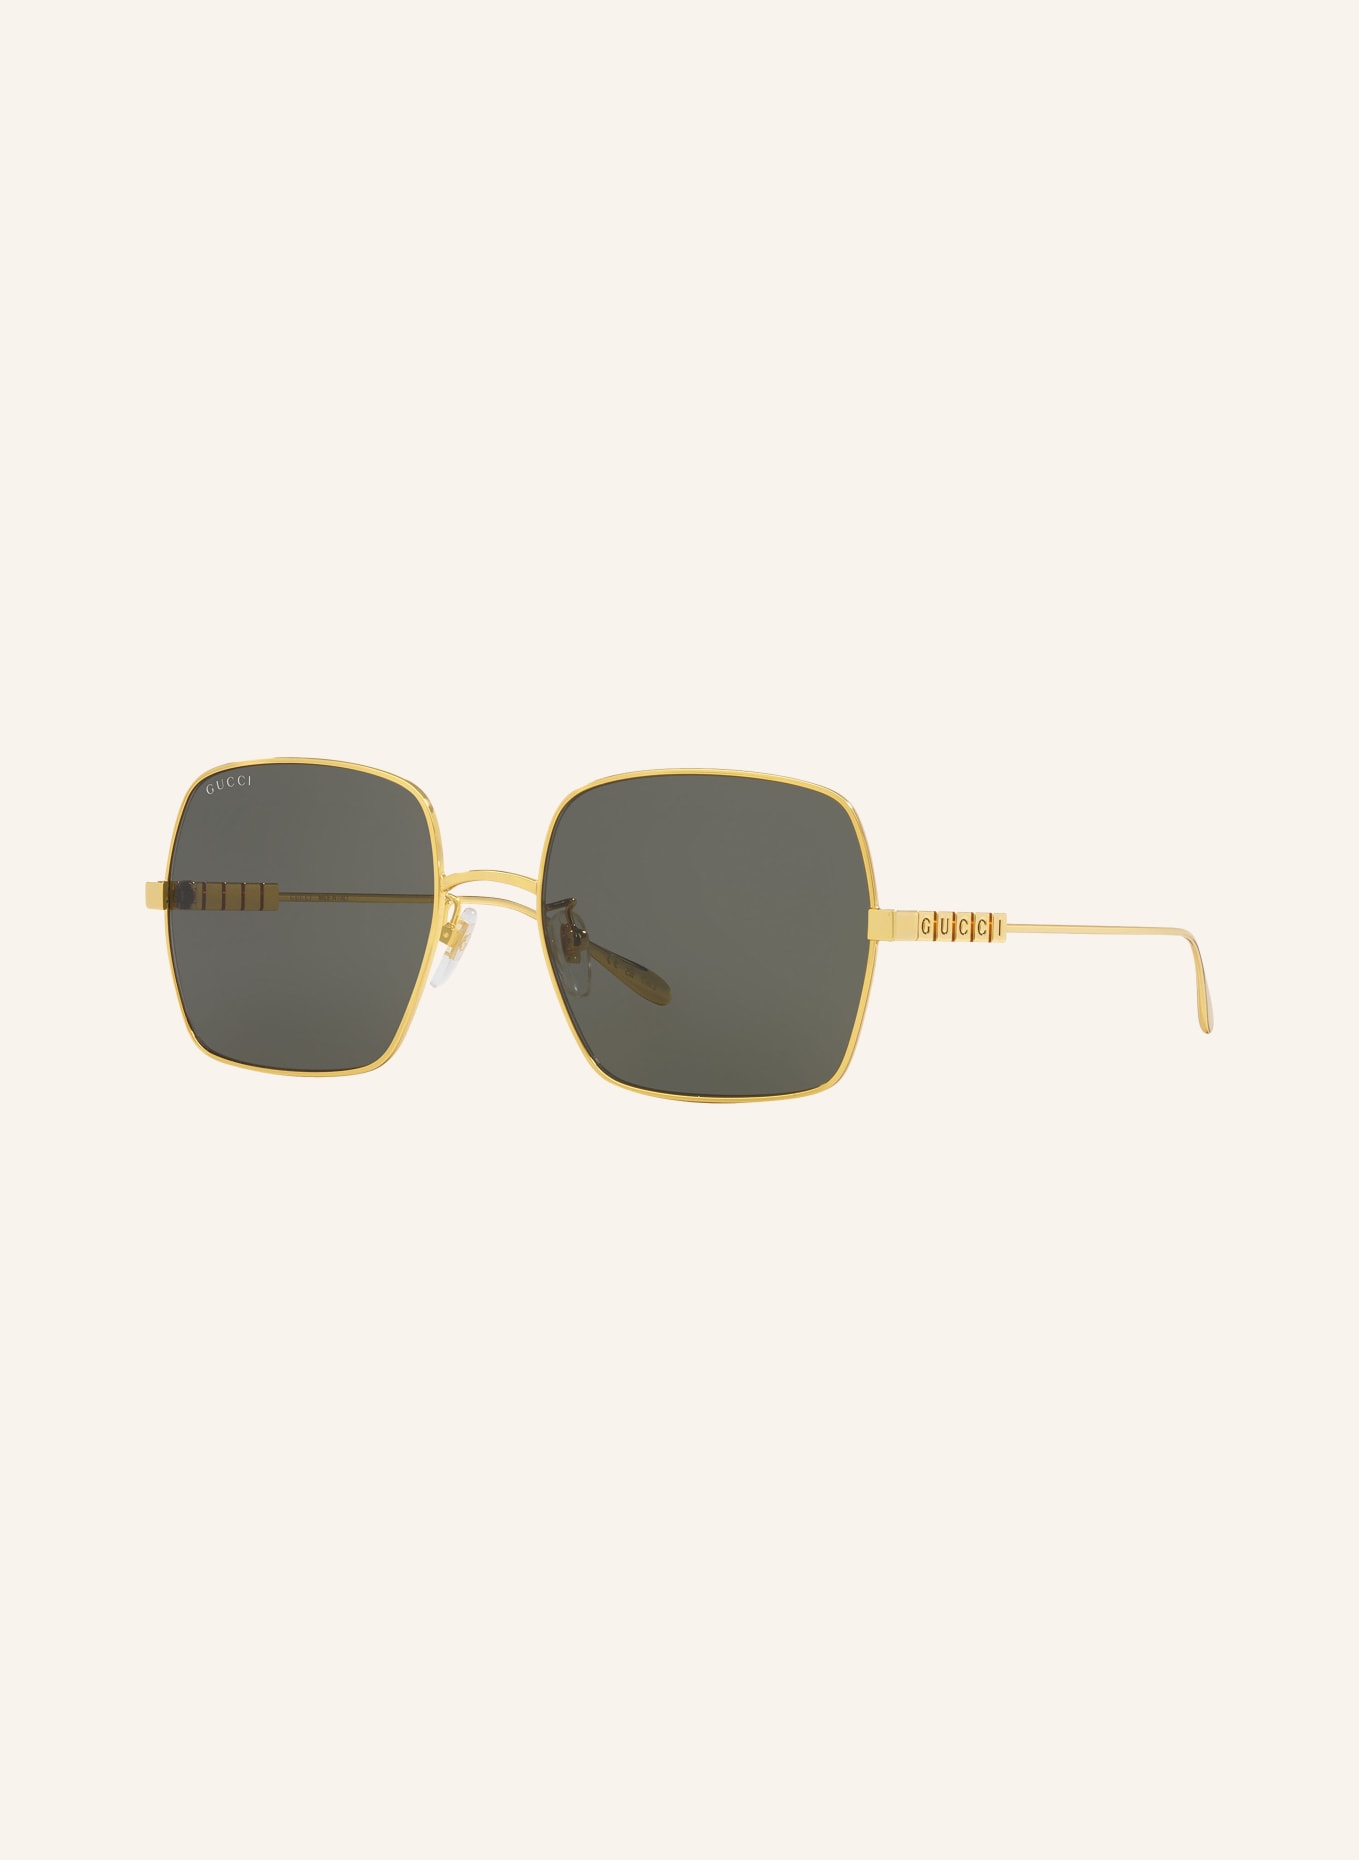 GUCCI Sunglasses GC002133, Color: 2300L1 - GOLD/GRAY (Image 1)